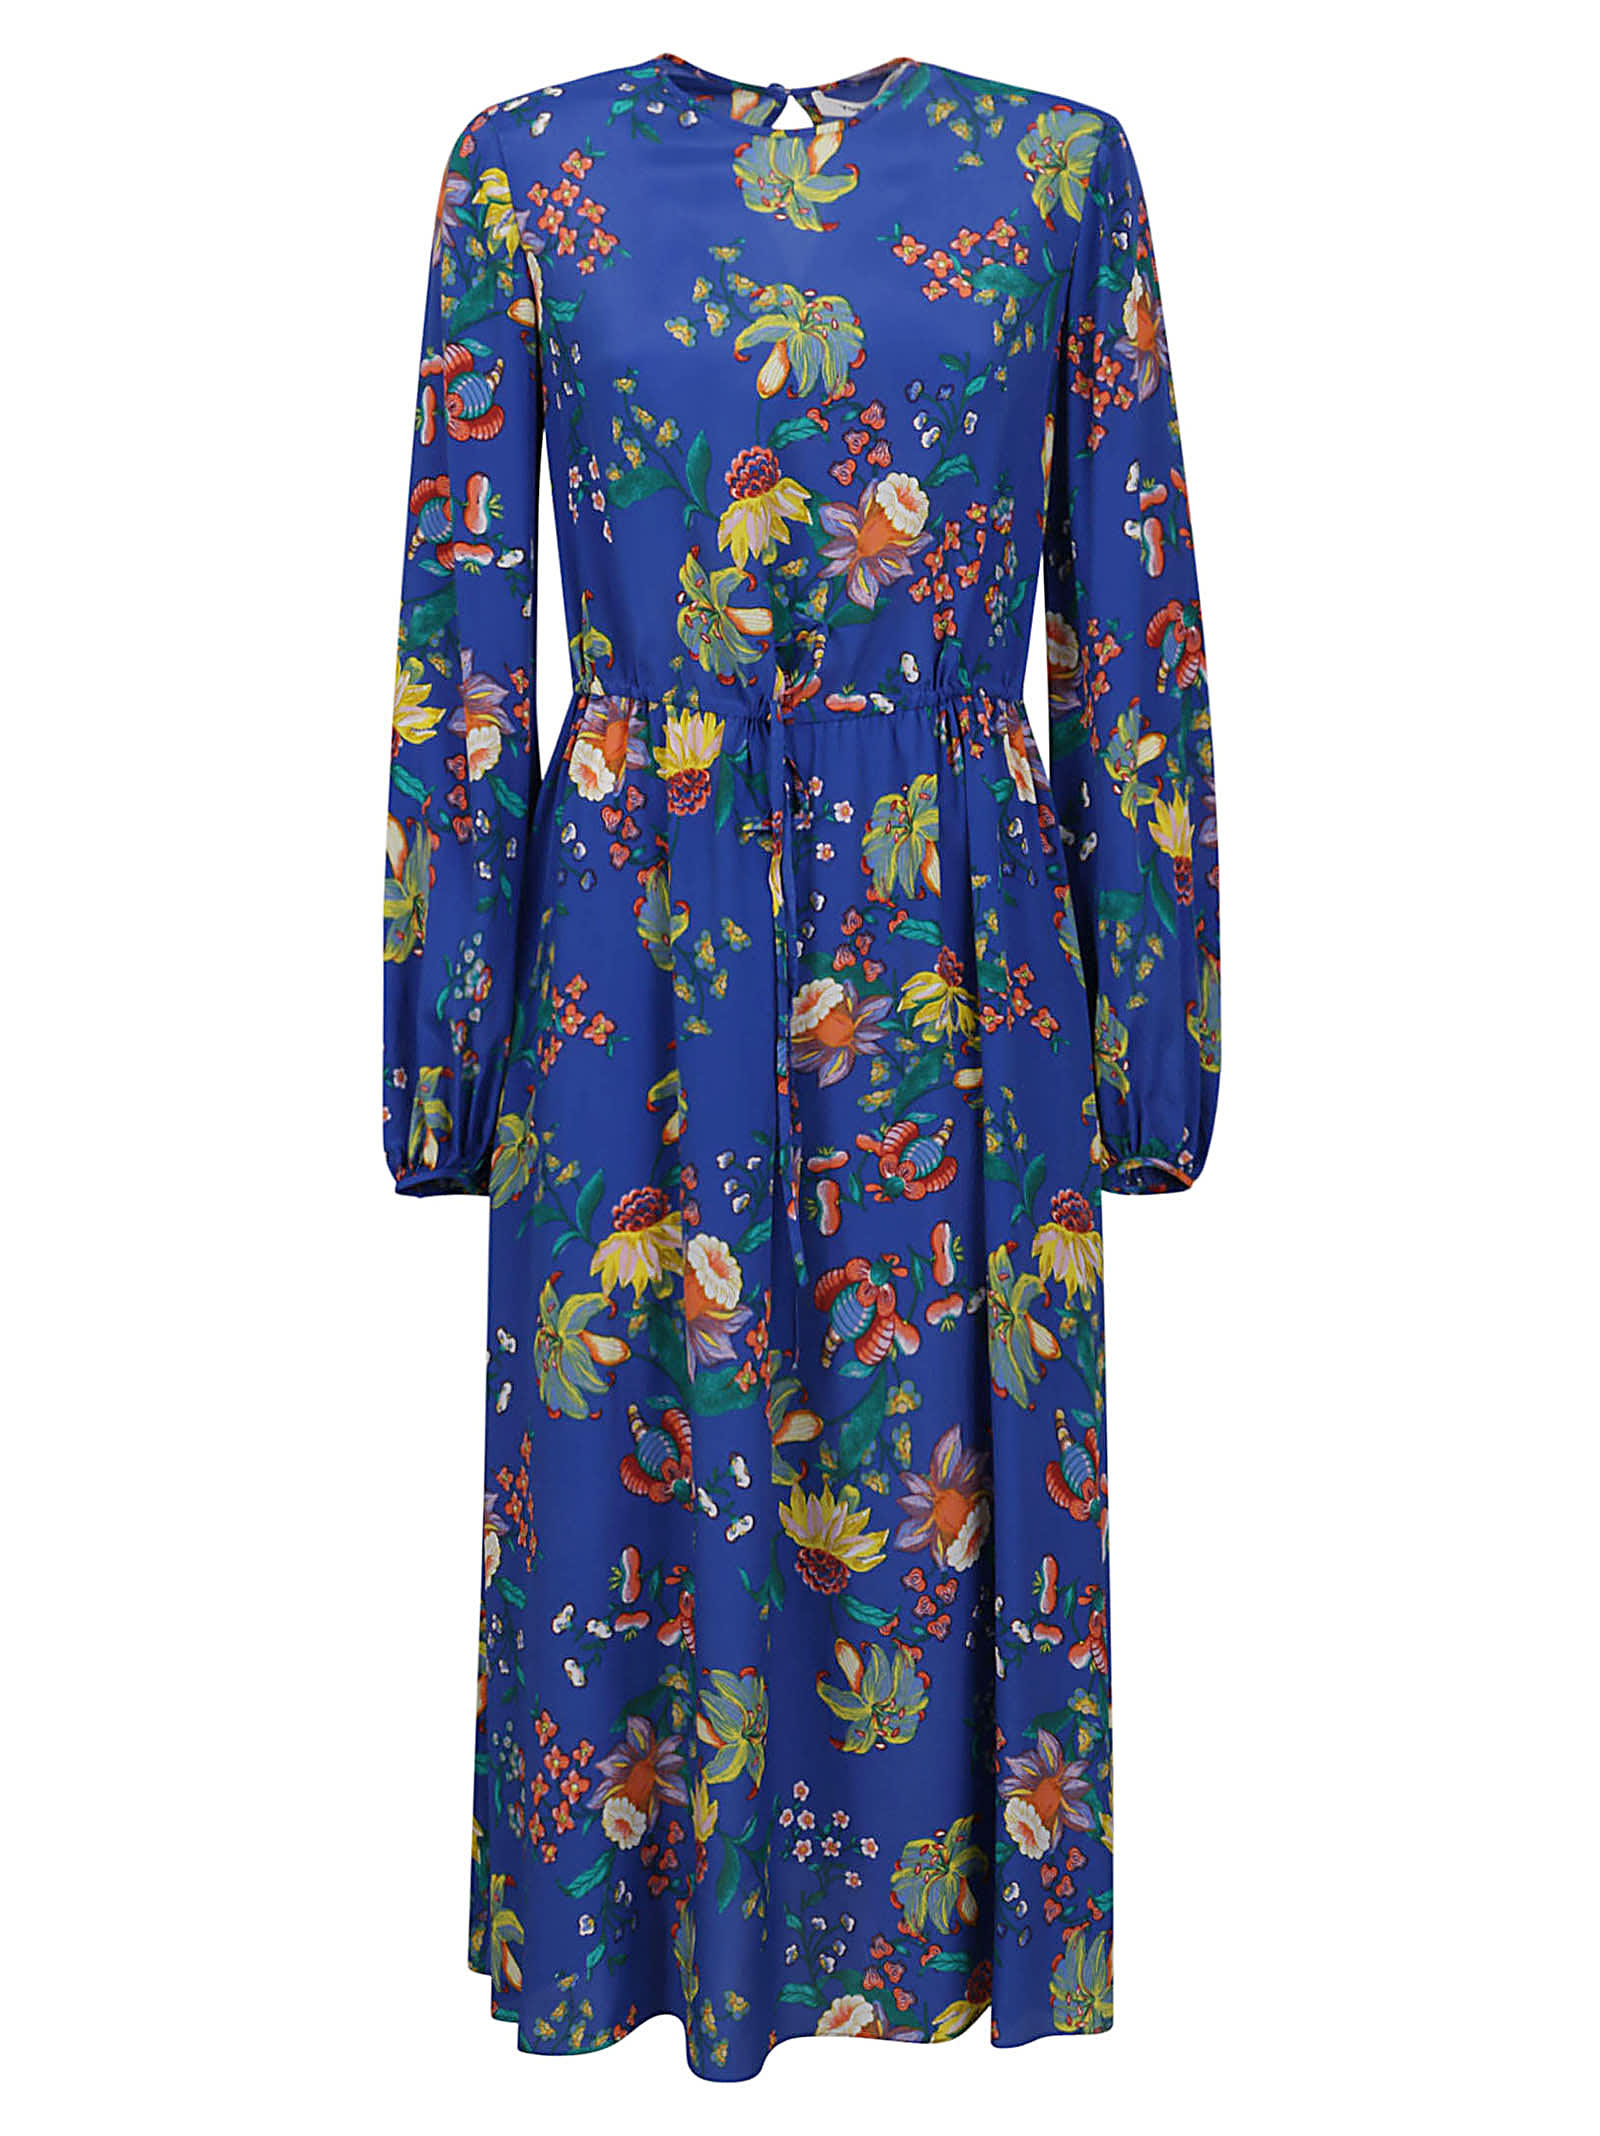 Diane Von Furstenberg Sydney Dress